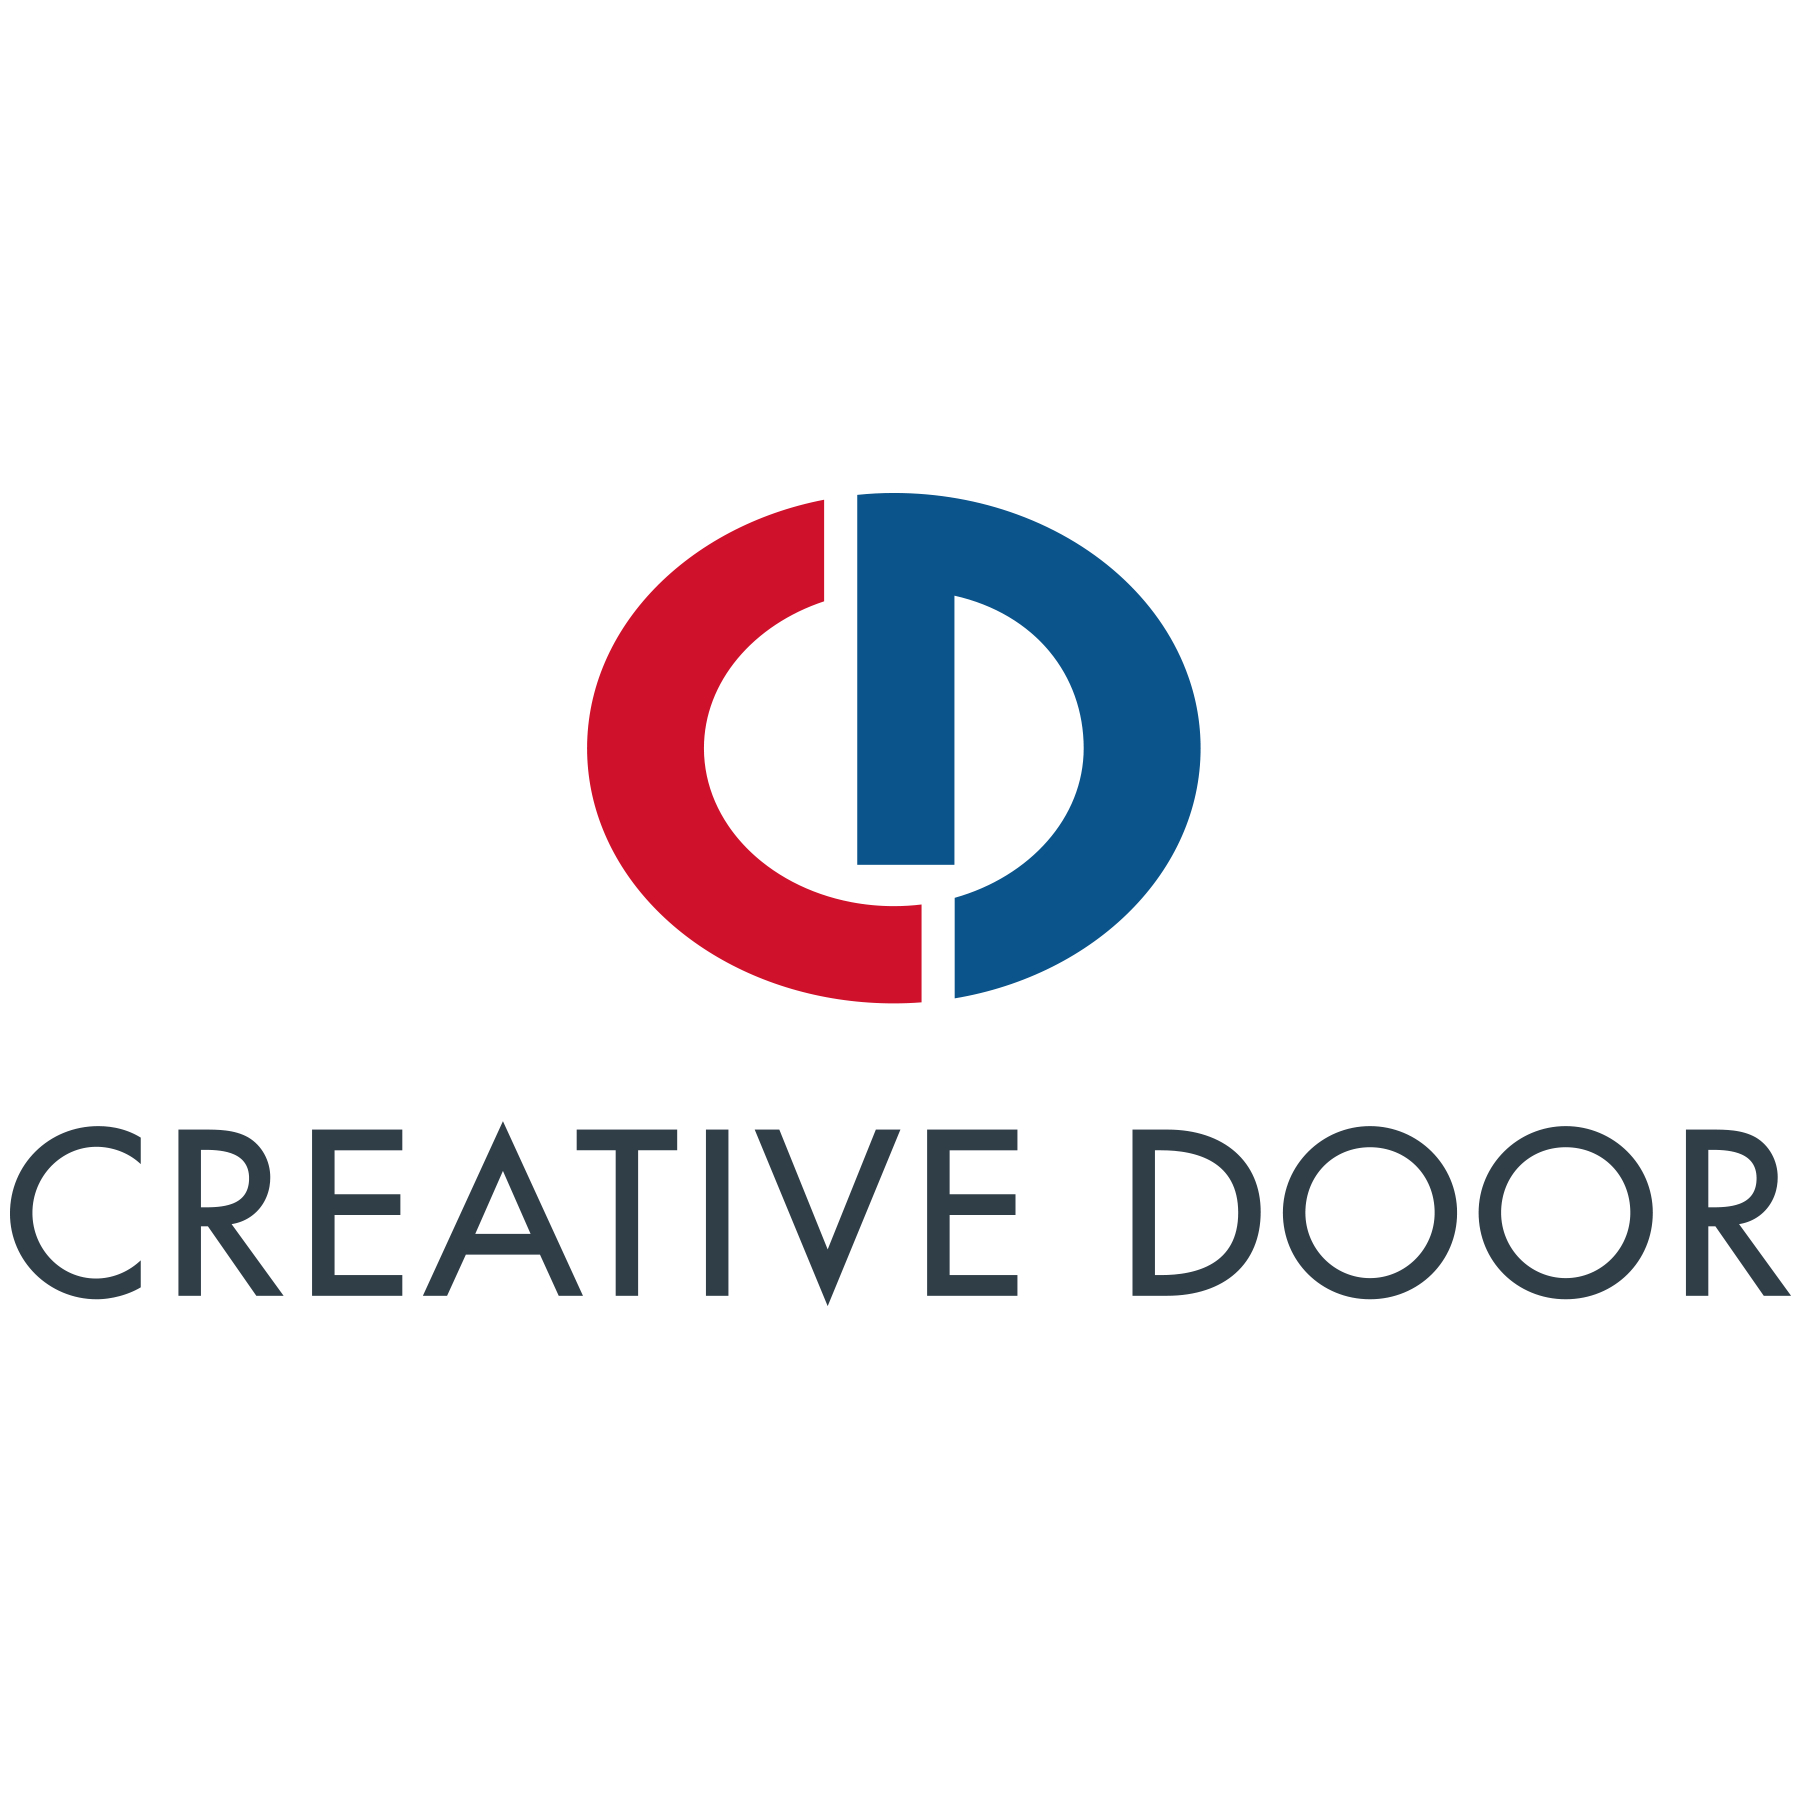 Creative Door Services Ltd